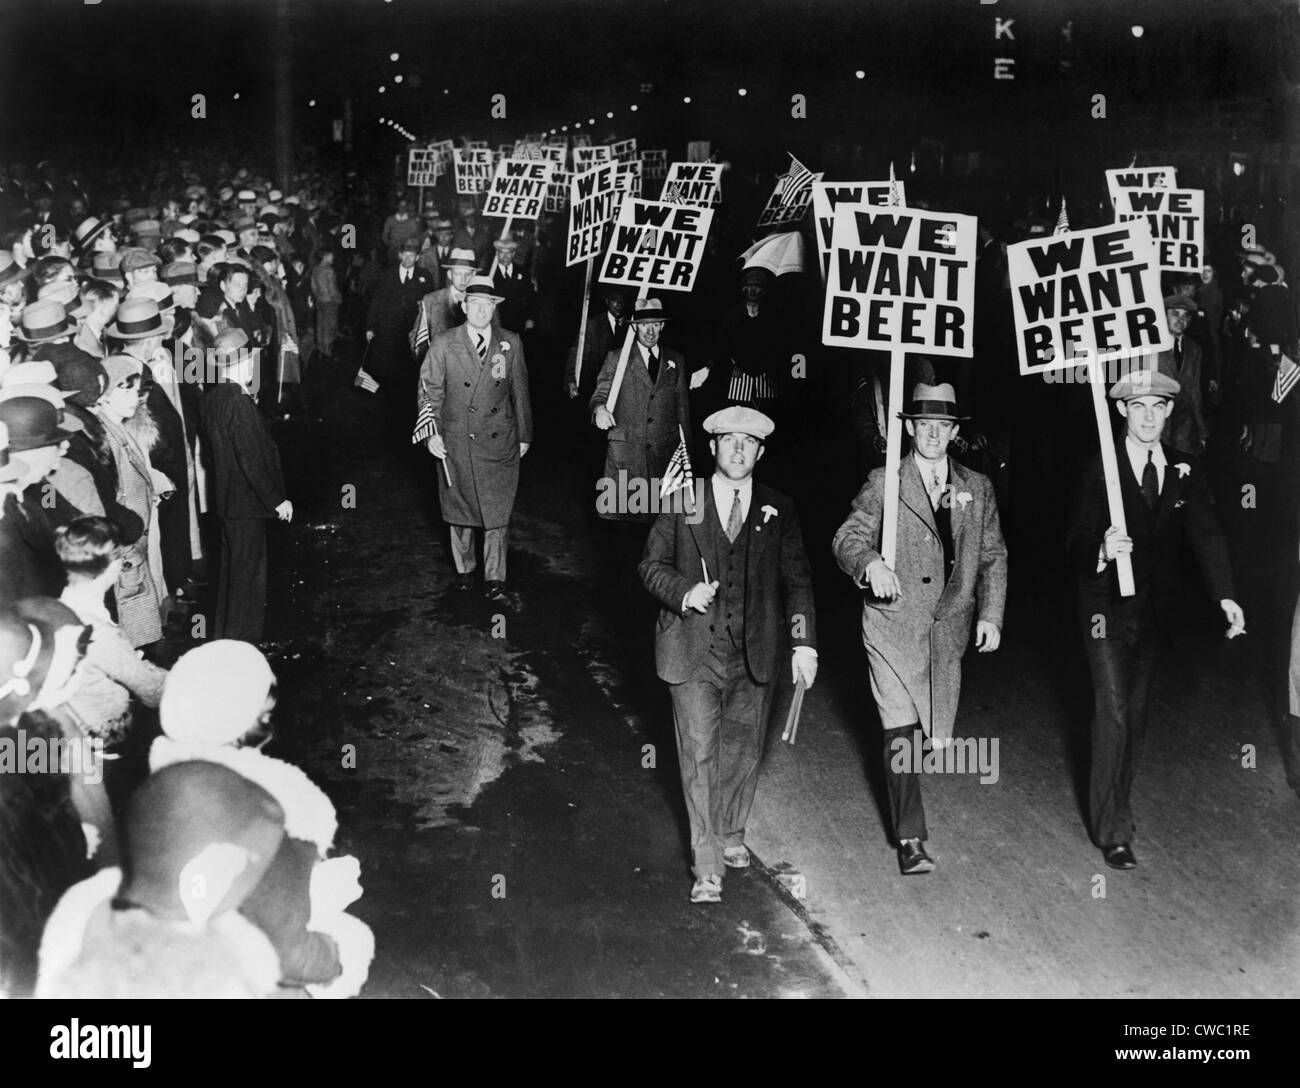 Mitglieder der Gewerkschaft protestieren Verbot in Newark New Jersey tragen Schilder mit der Aufschrift "Wir wollen Bier." Oktober 1931. Stockfoto